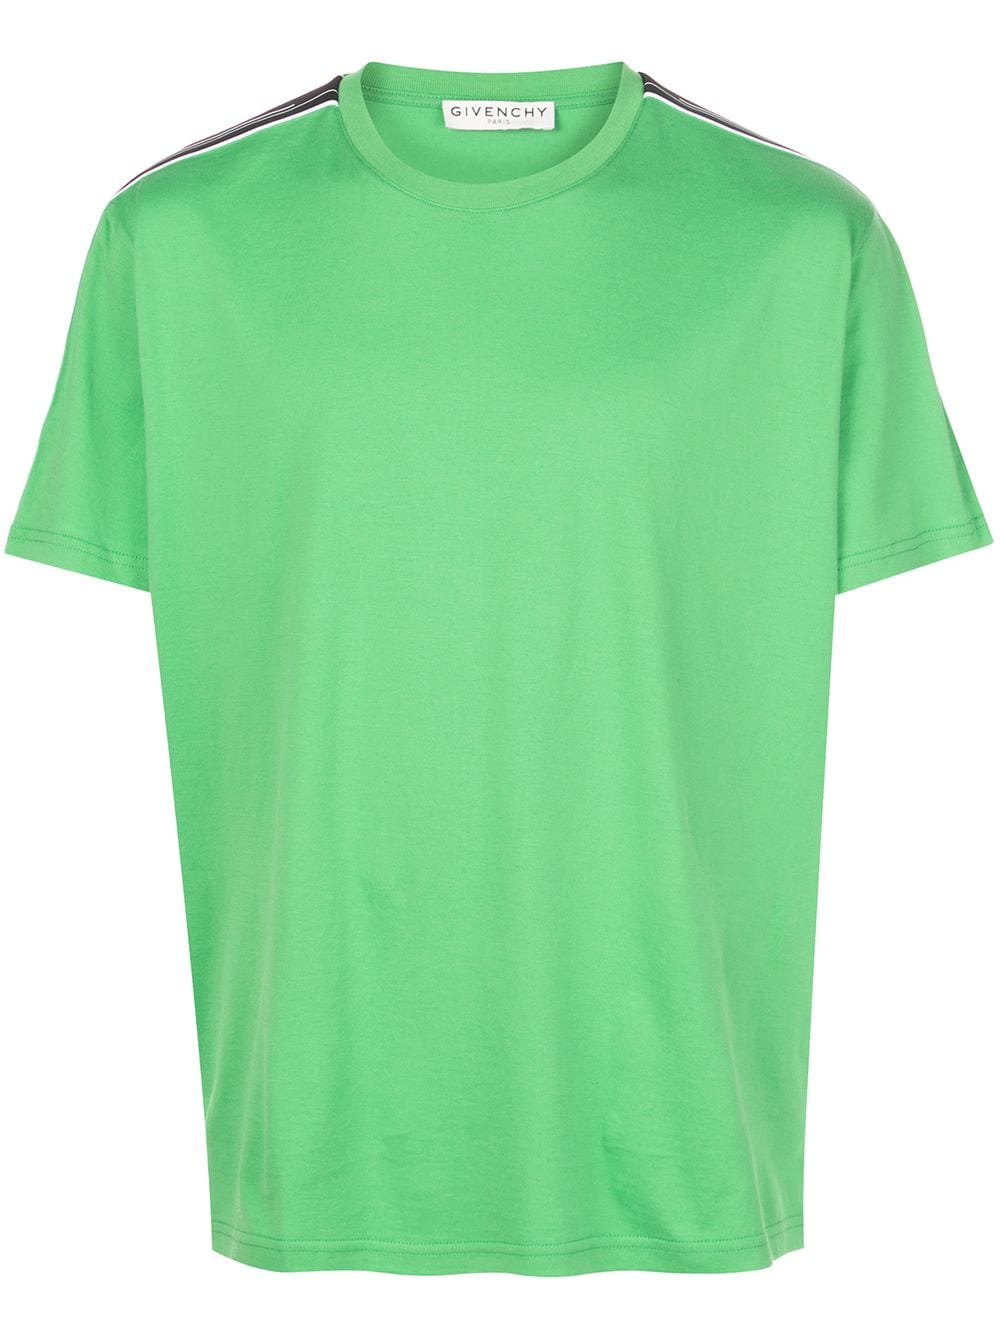 green givenchy shirt